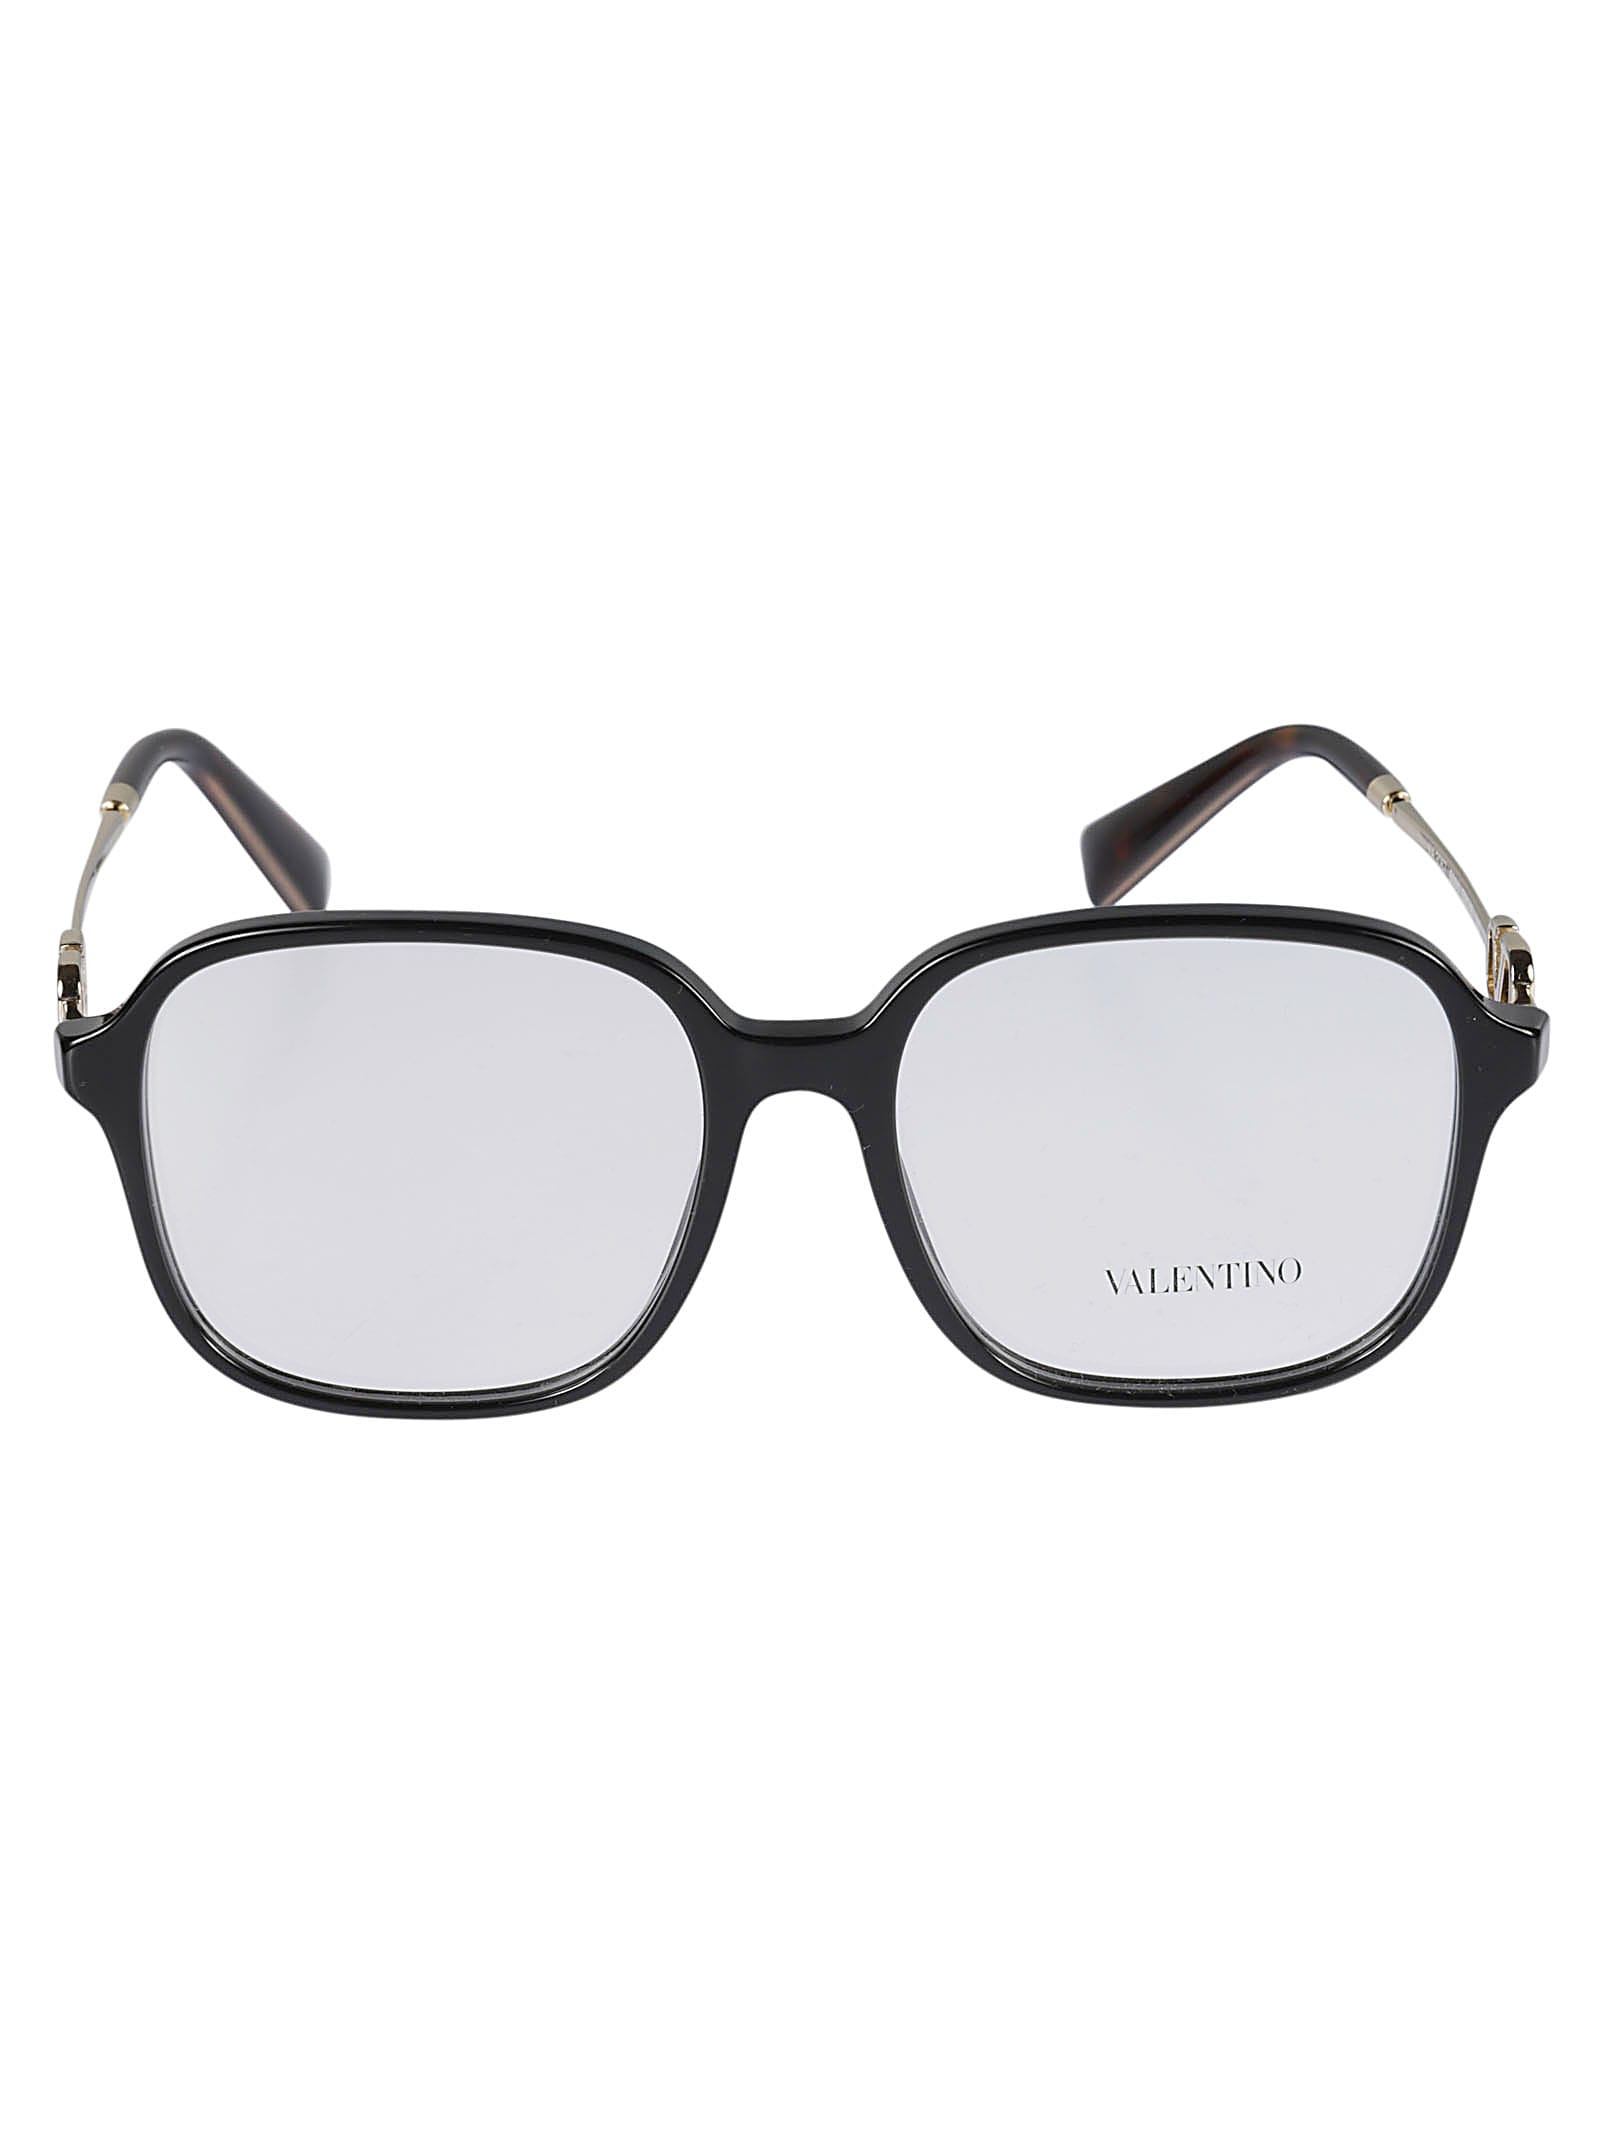 Valentino Vista5001 Glasses